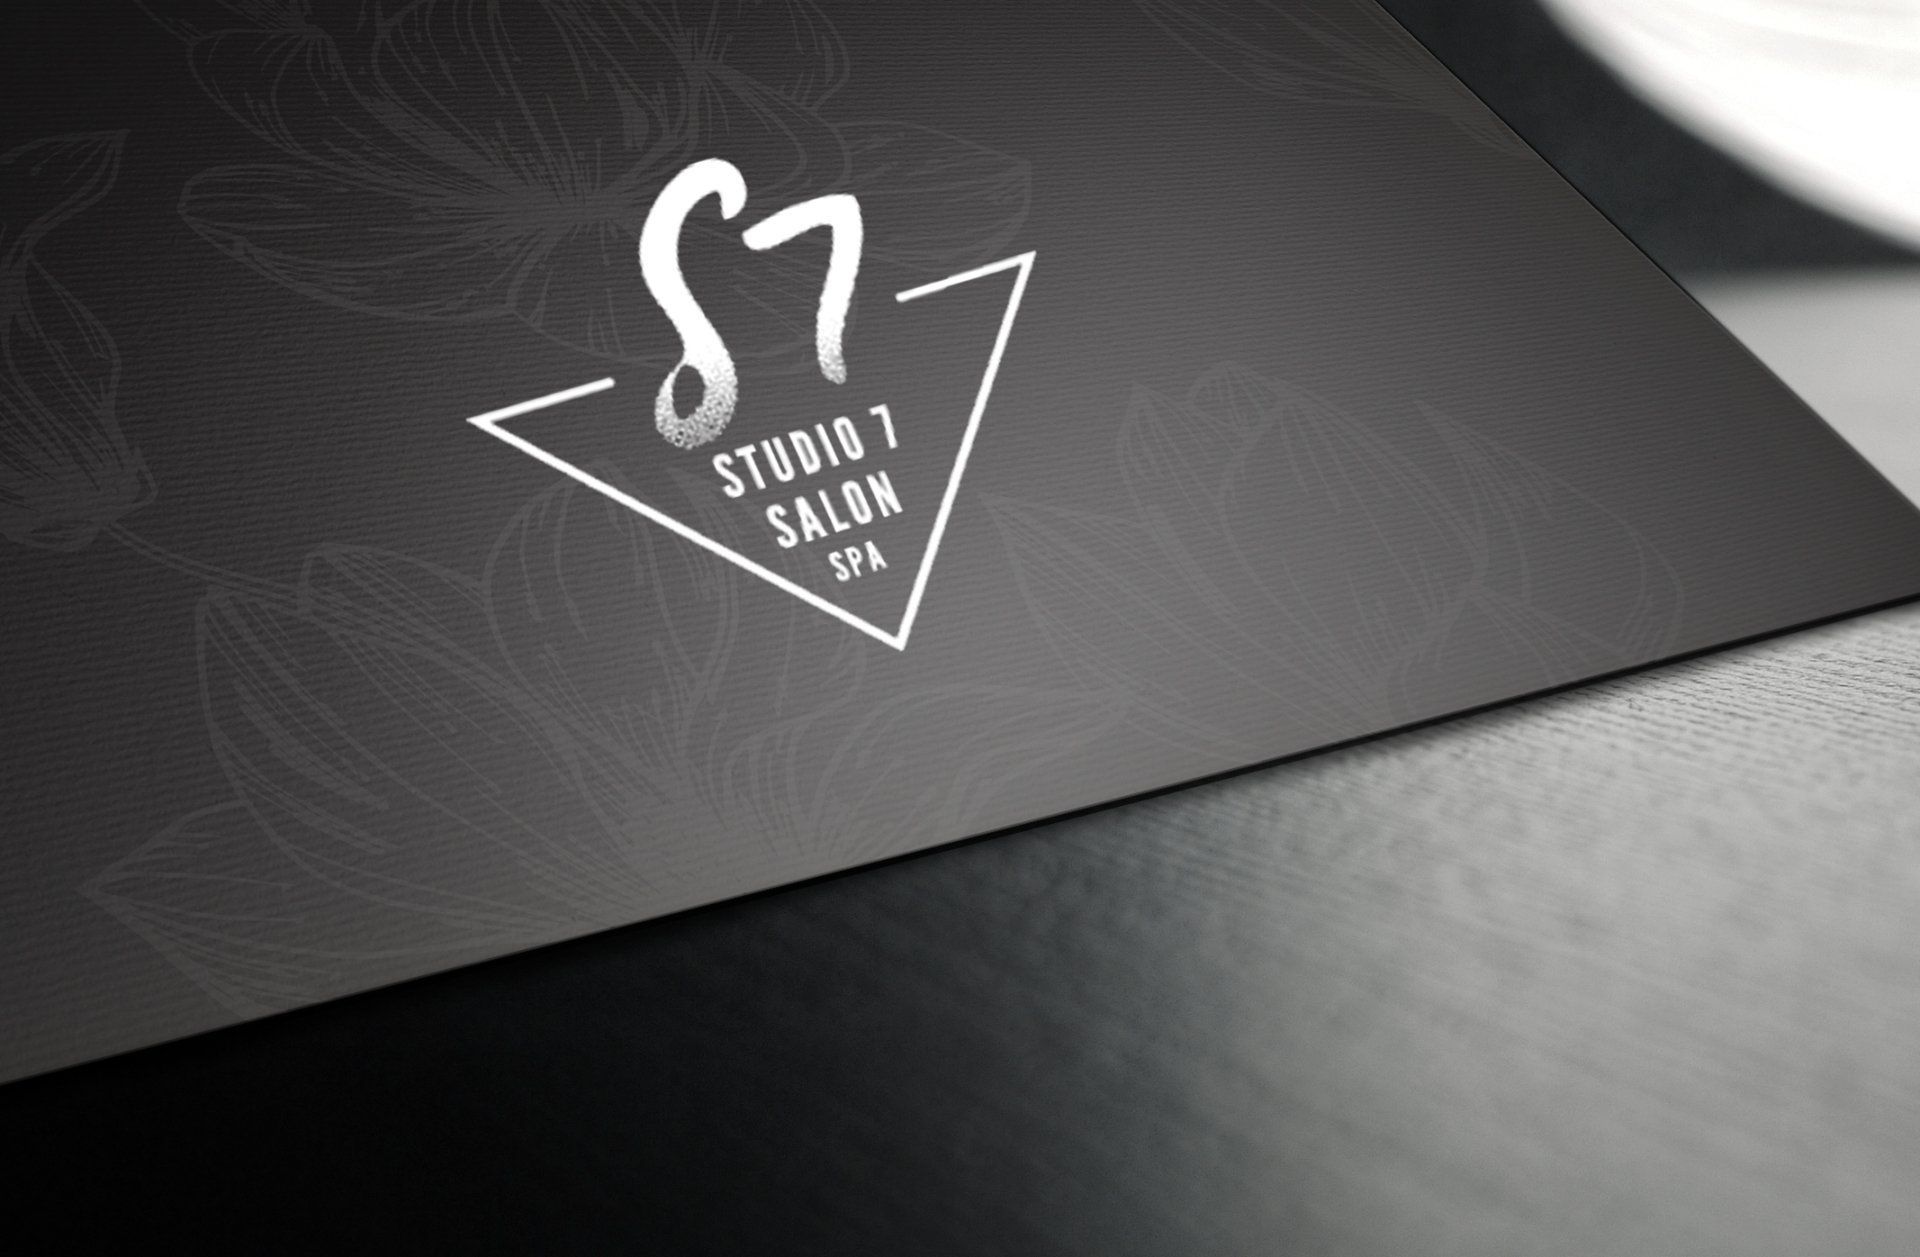 A black and white logo for s7 studio 7 salon spa